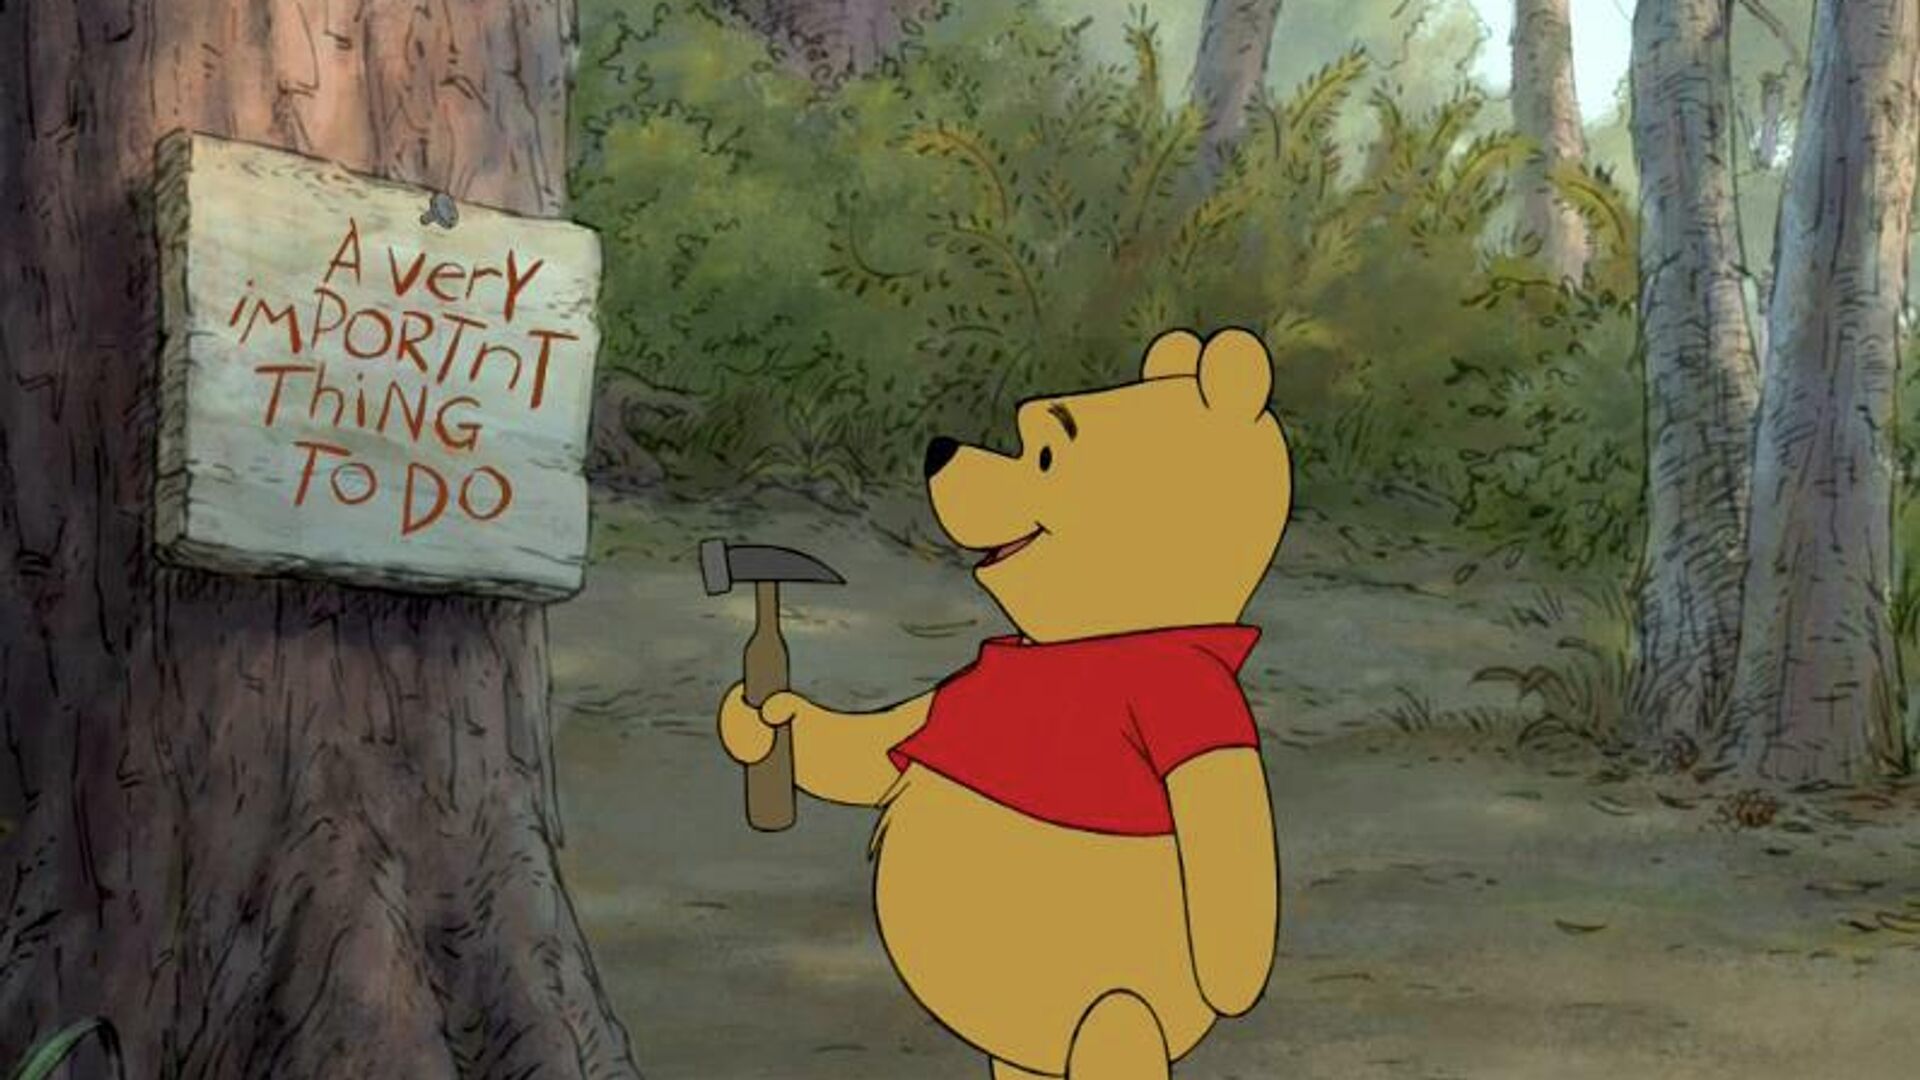 Winnie the Pooh, personaje creado en 1926.  - Sputnik Mundo, 1920, 04.01.2022